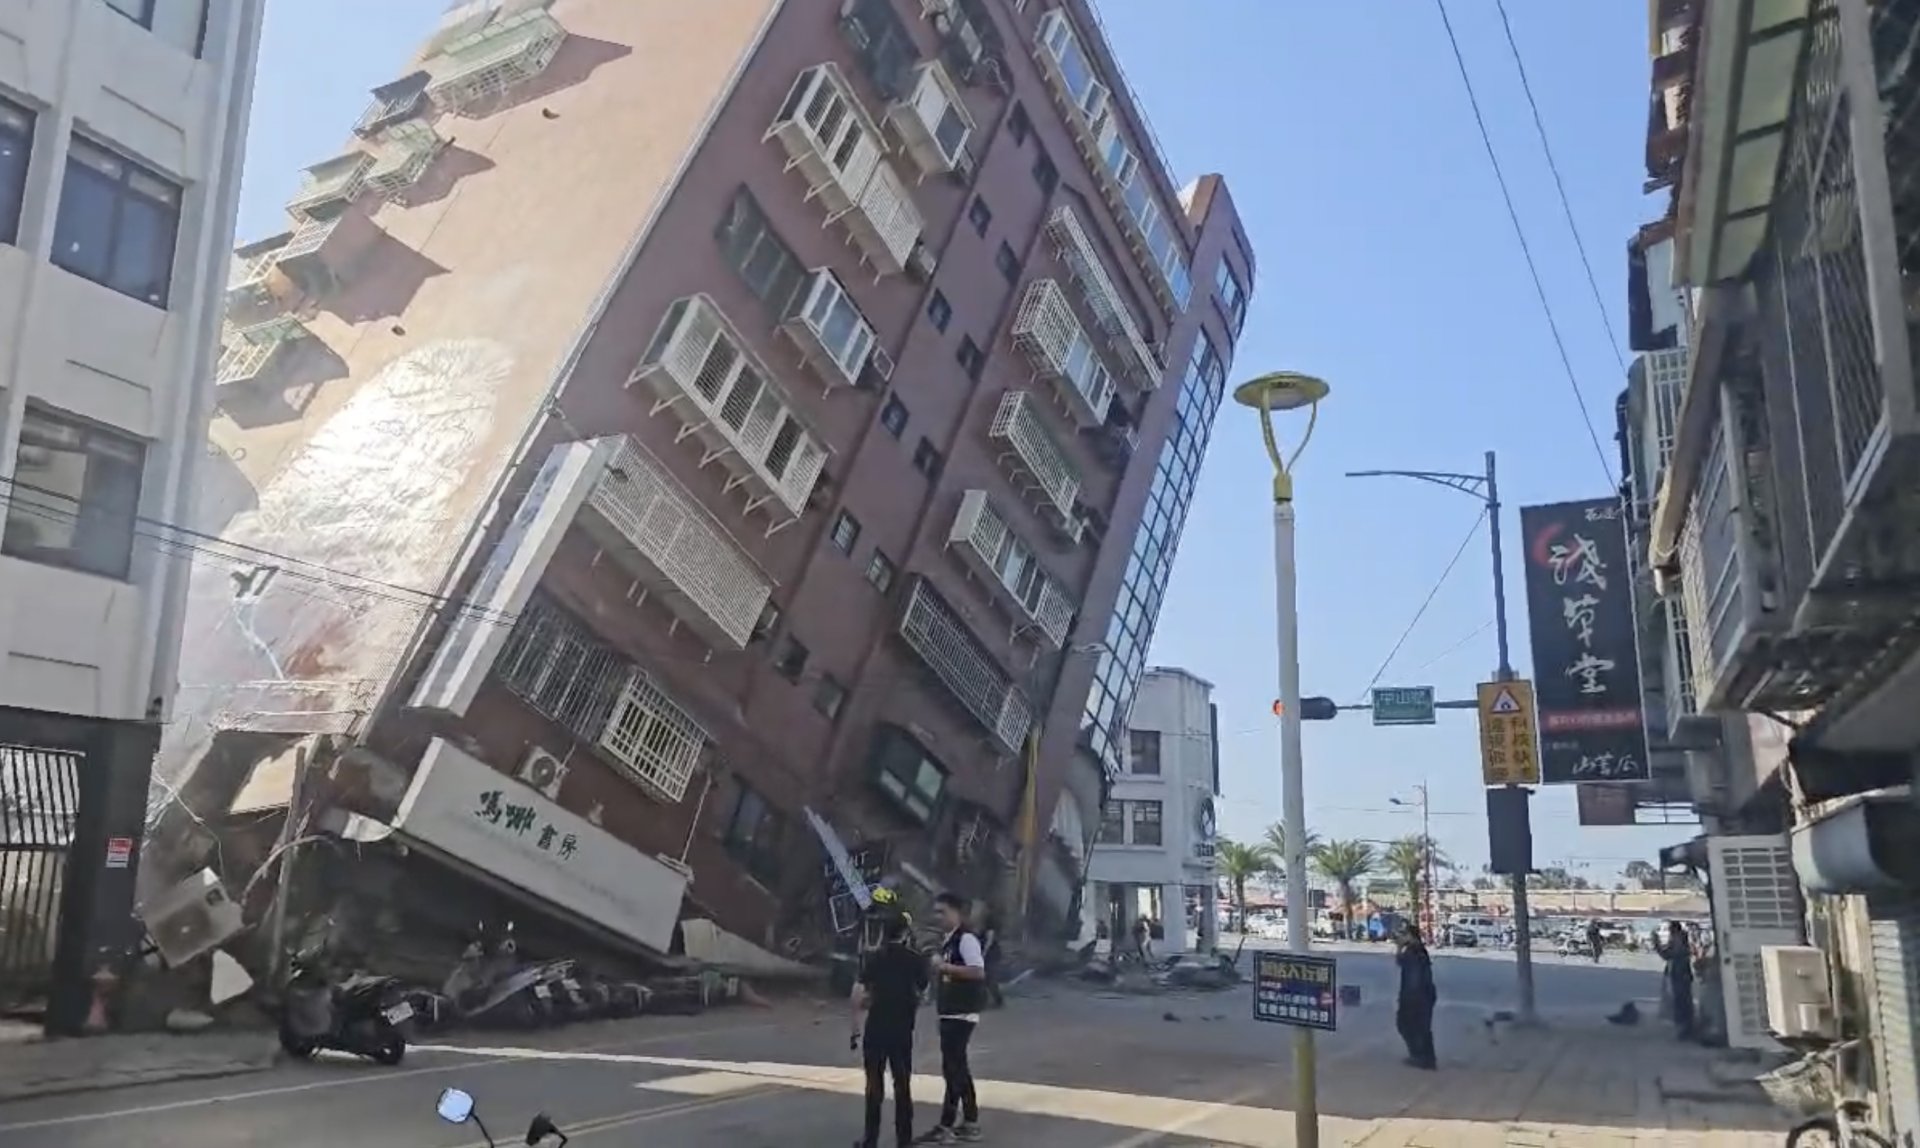 Страховито наклонени сгради в Хуалиен - най-пострадалият град от мощния трус